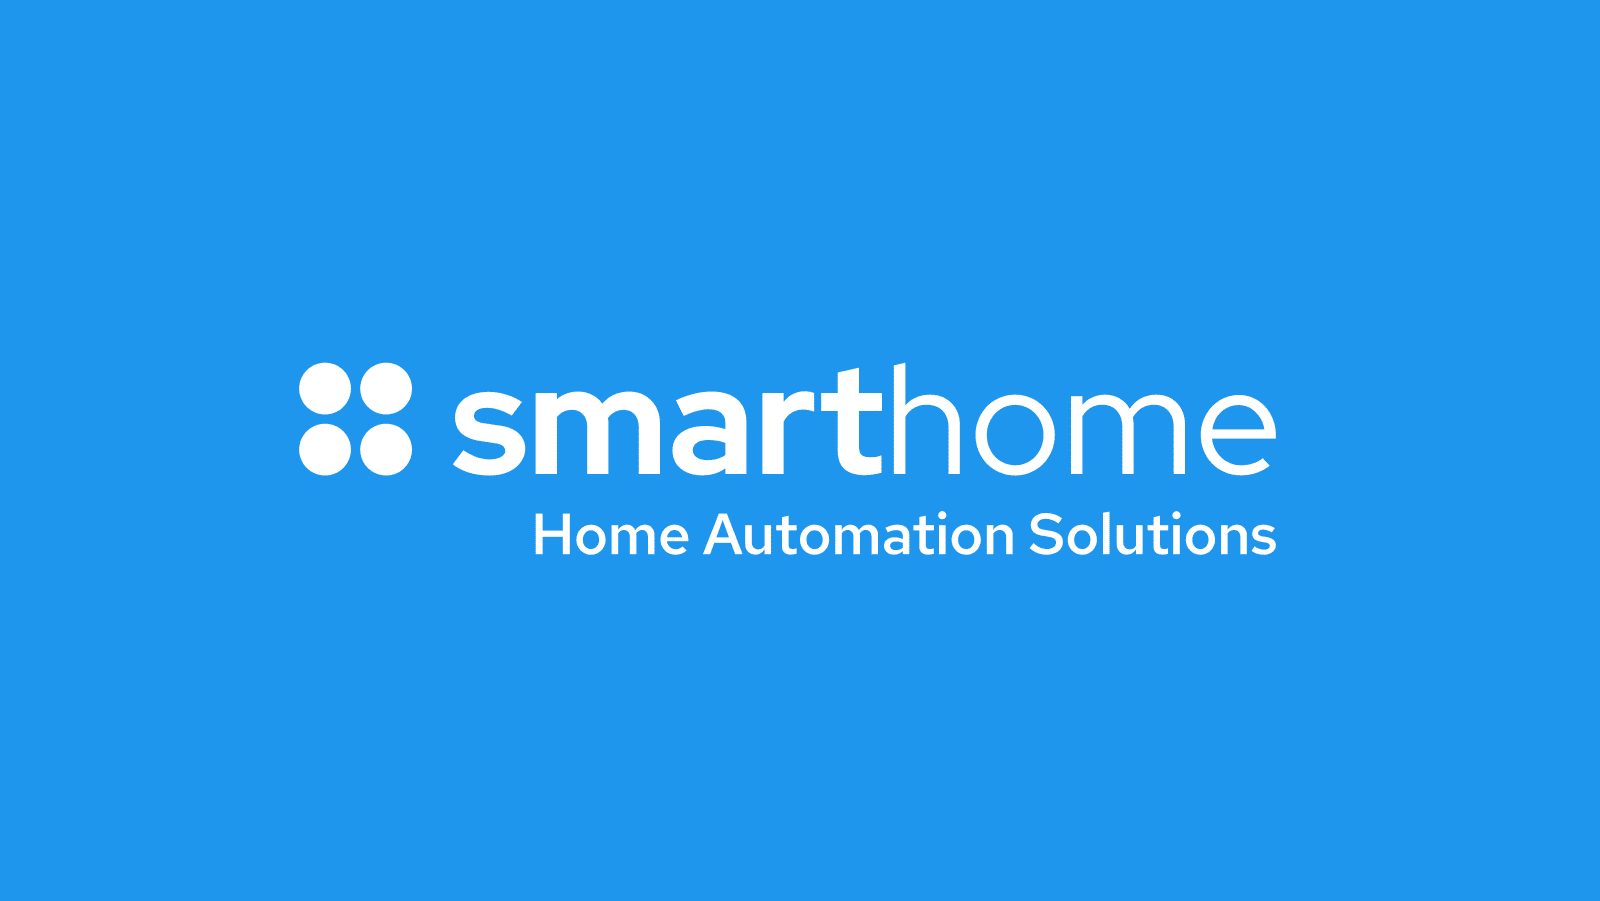 Smart Home logo and website